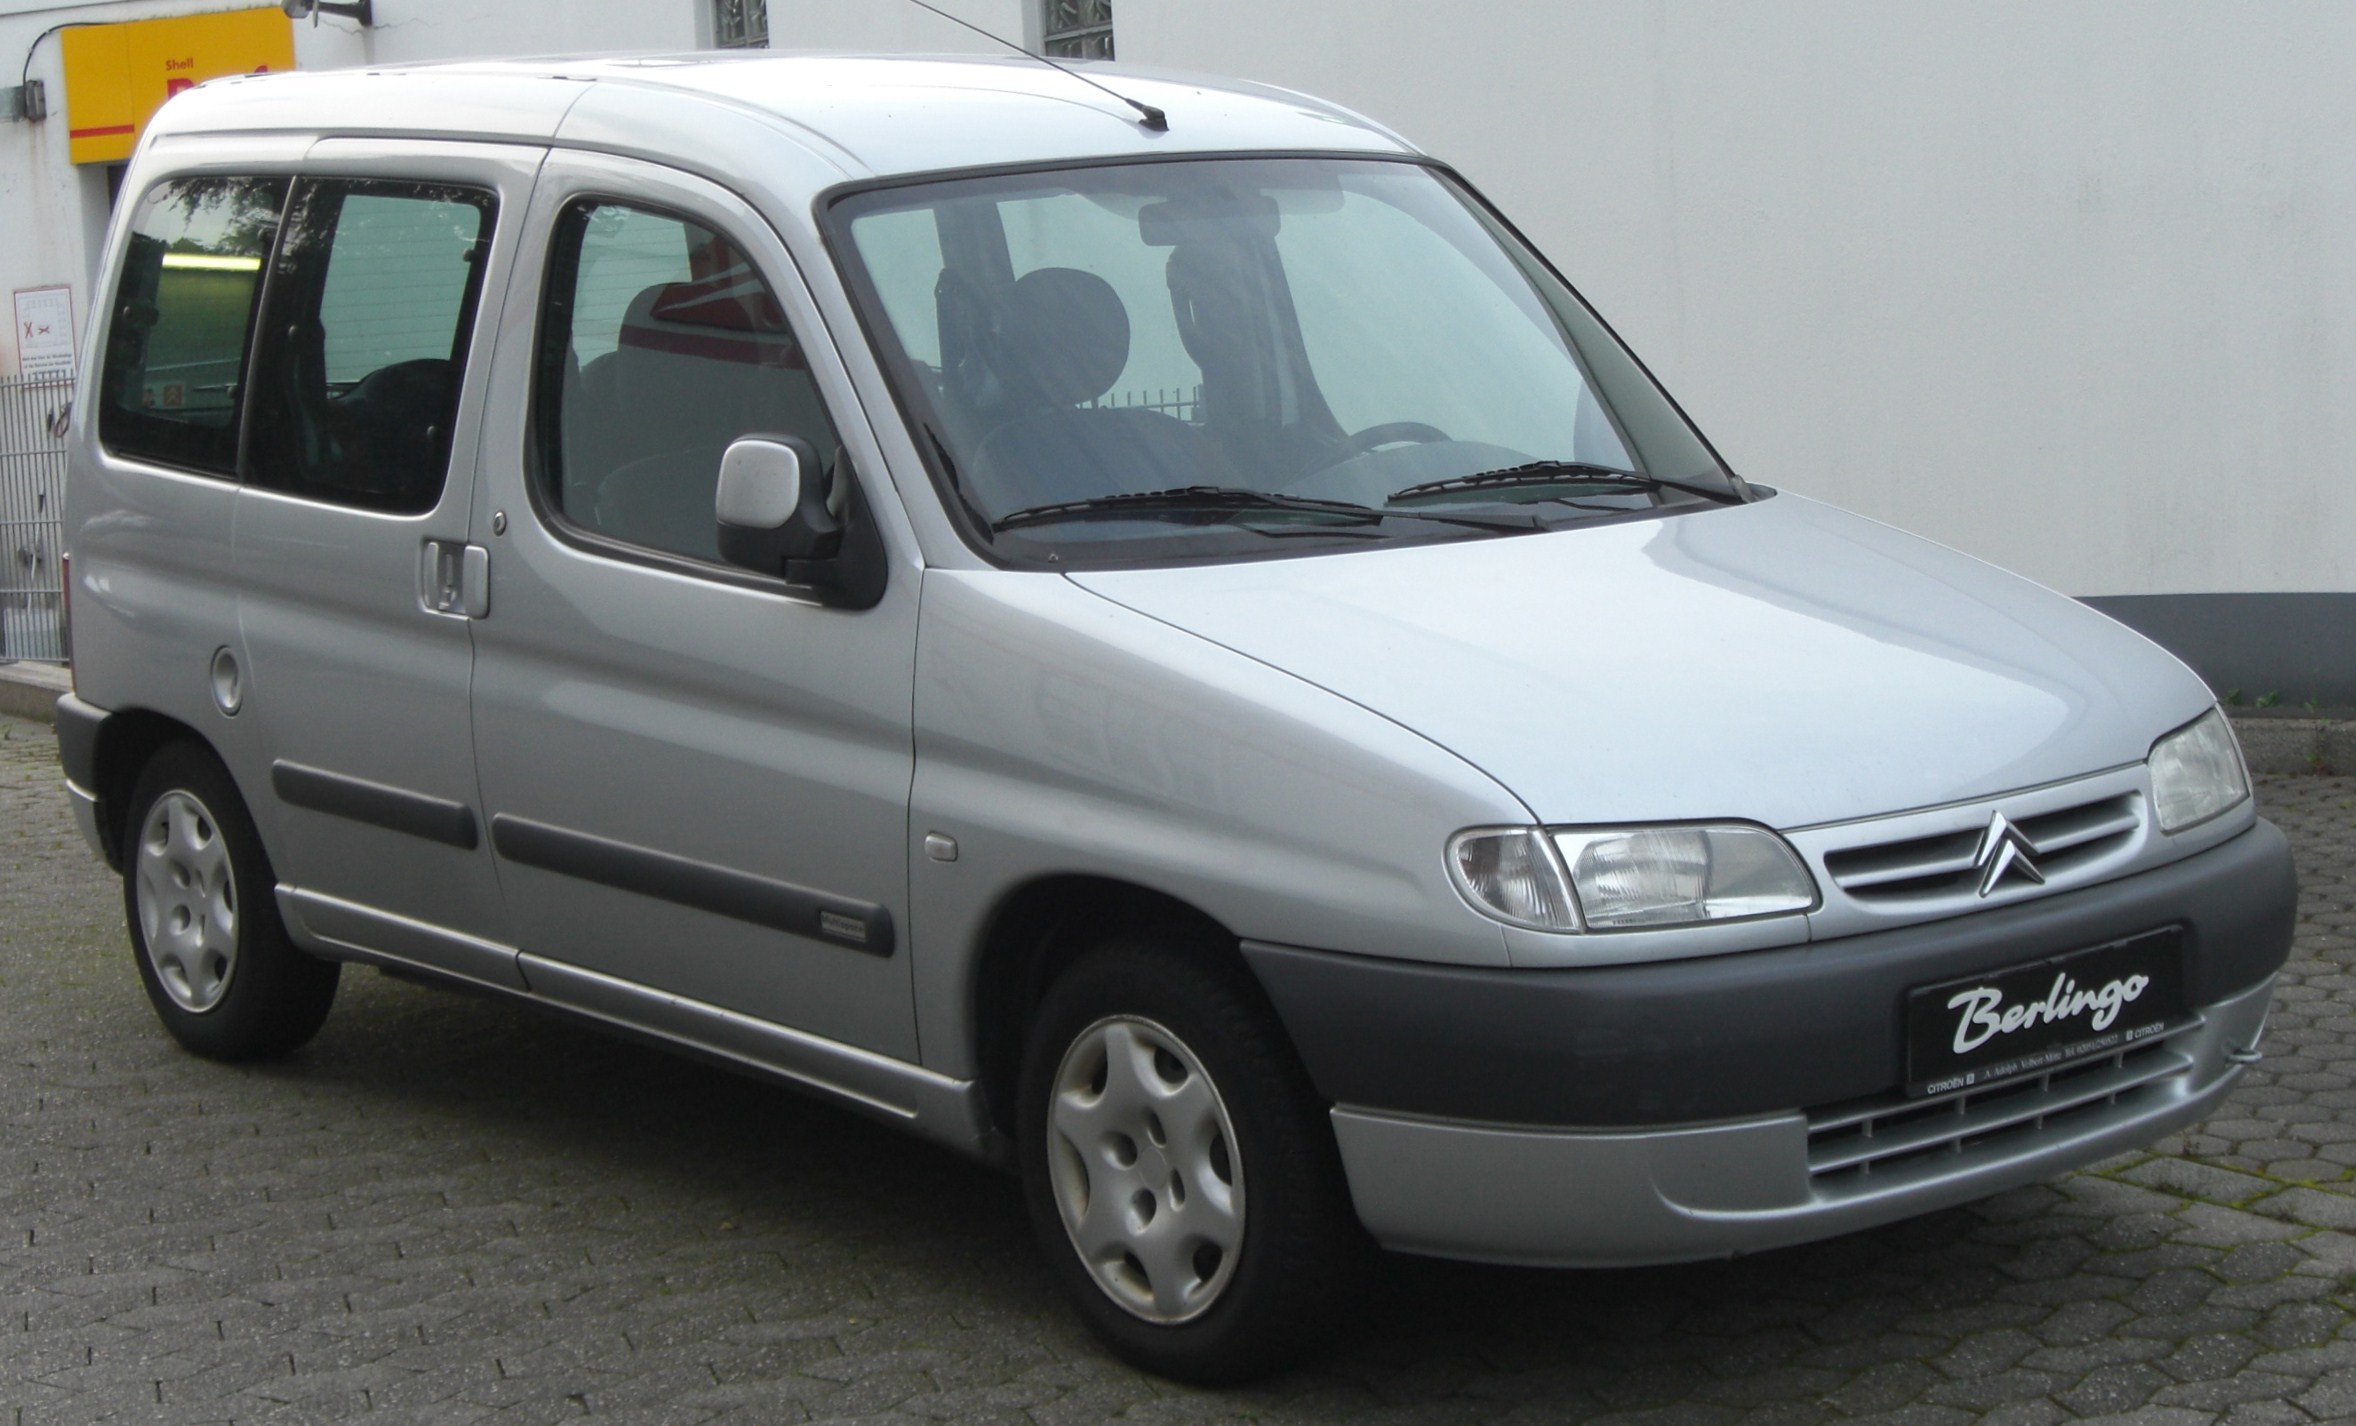 İşte Karşınızda Yepyeni "Citroën Berlingo"